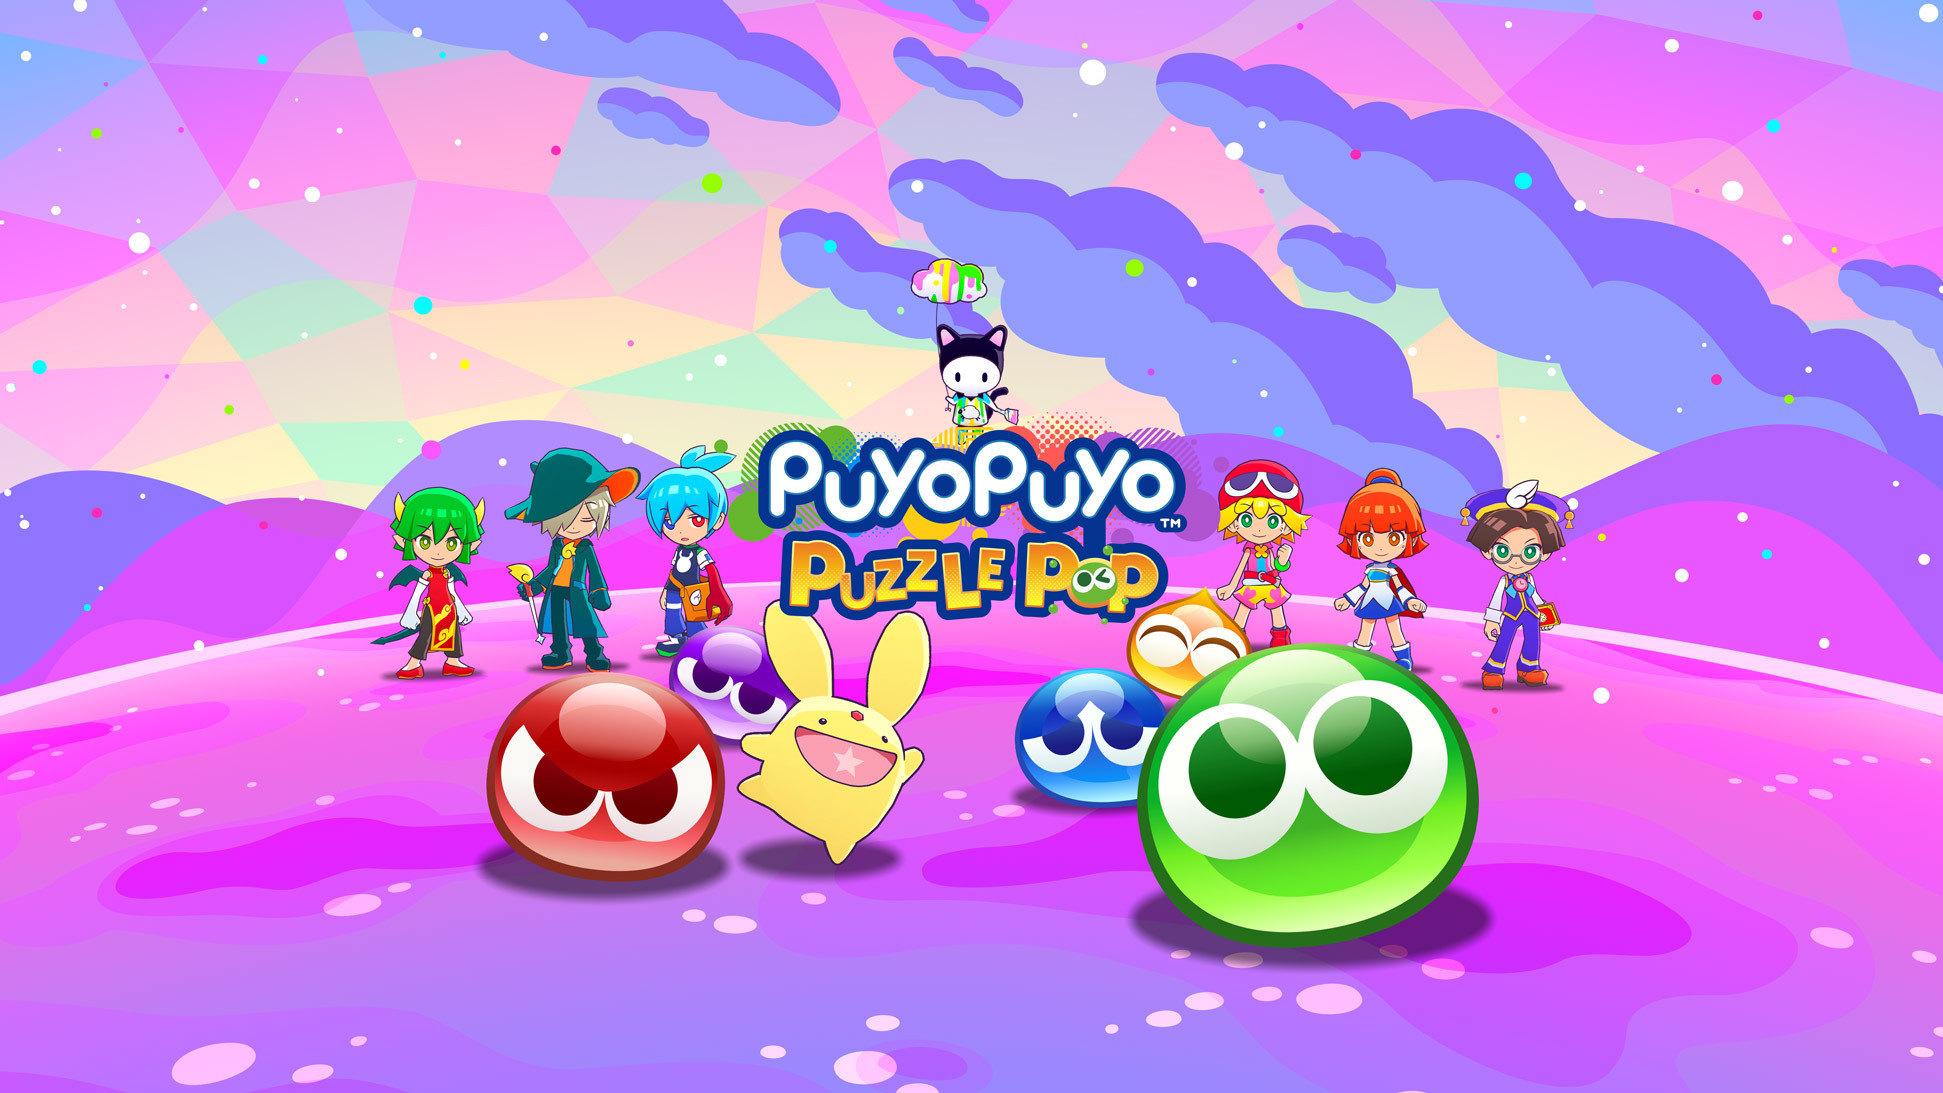 《魔法气泡益智消消乐》现已上架Apple Arcade 收录全新主线故事及4 人线上对战《Puyo Puyo Puzzle Pop》